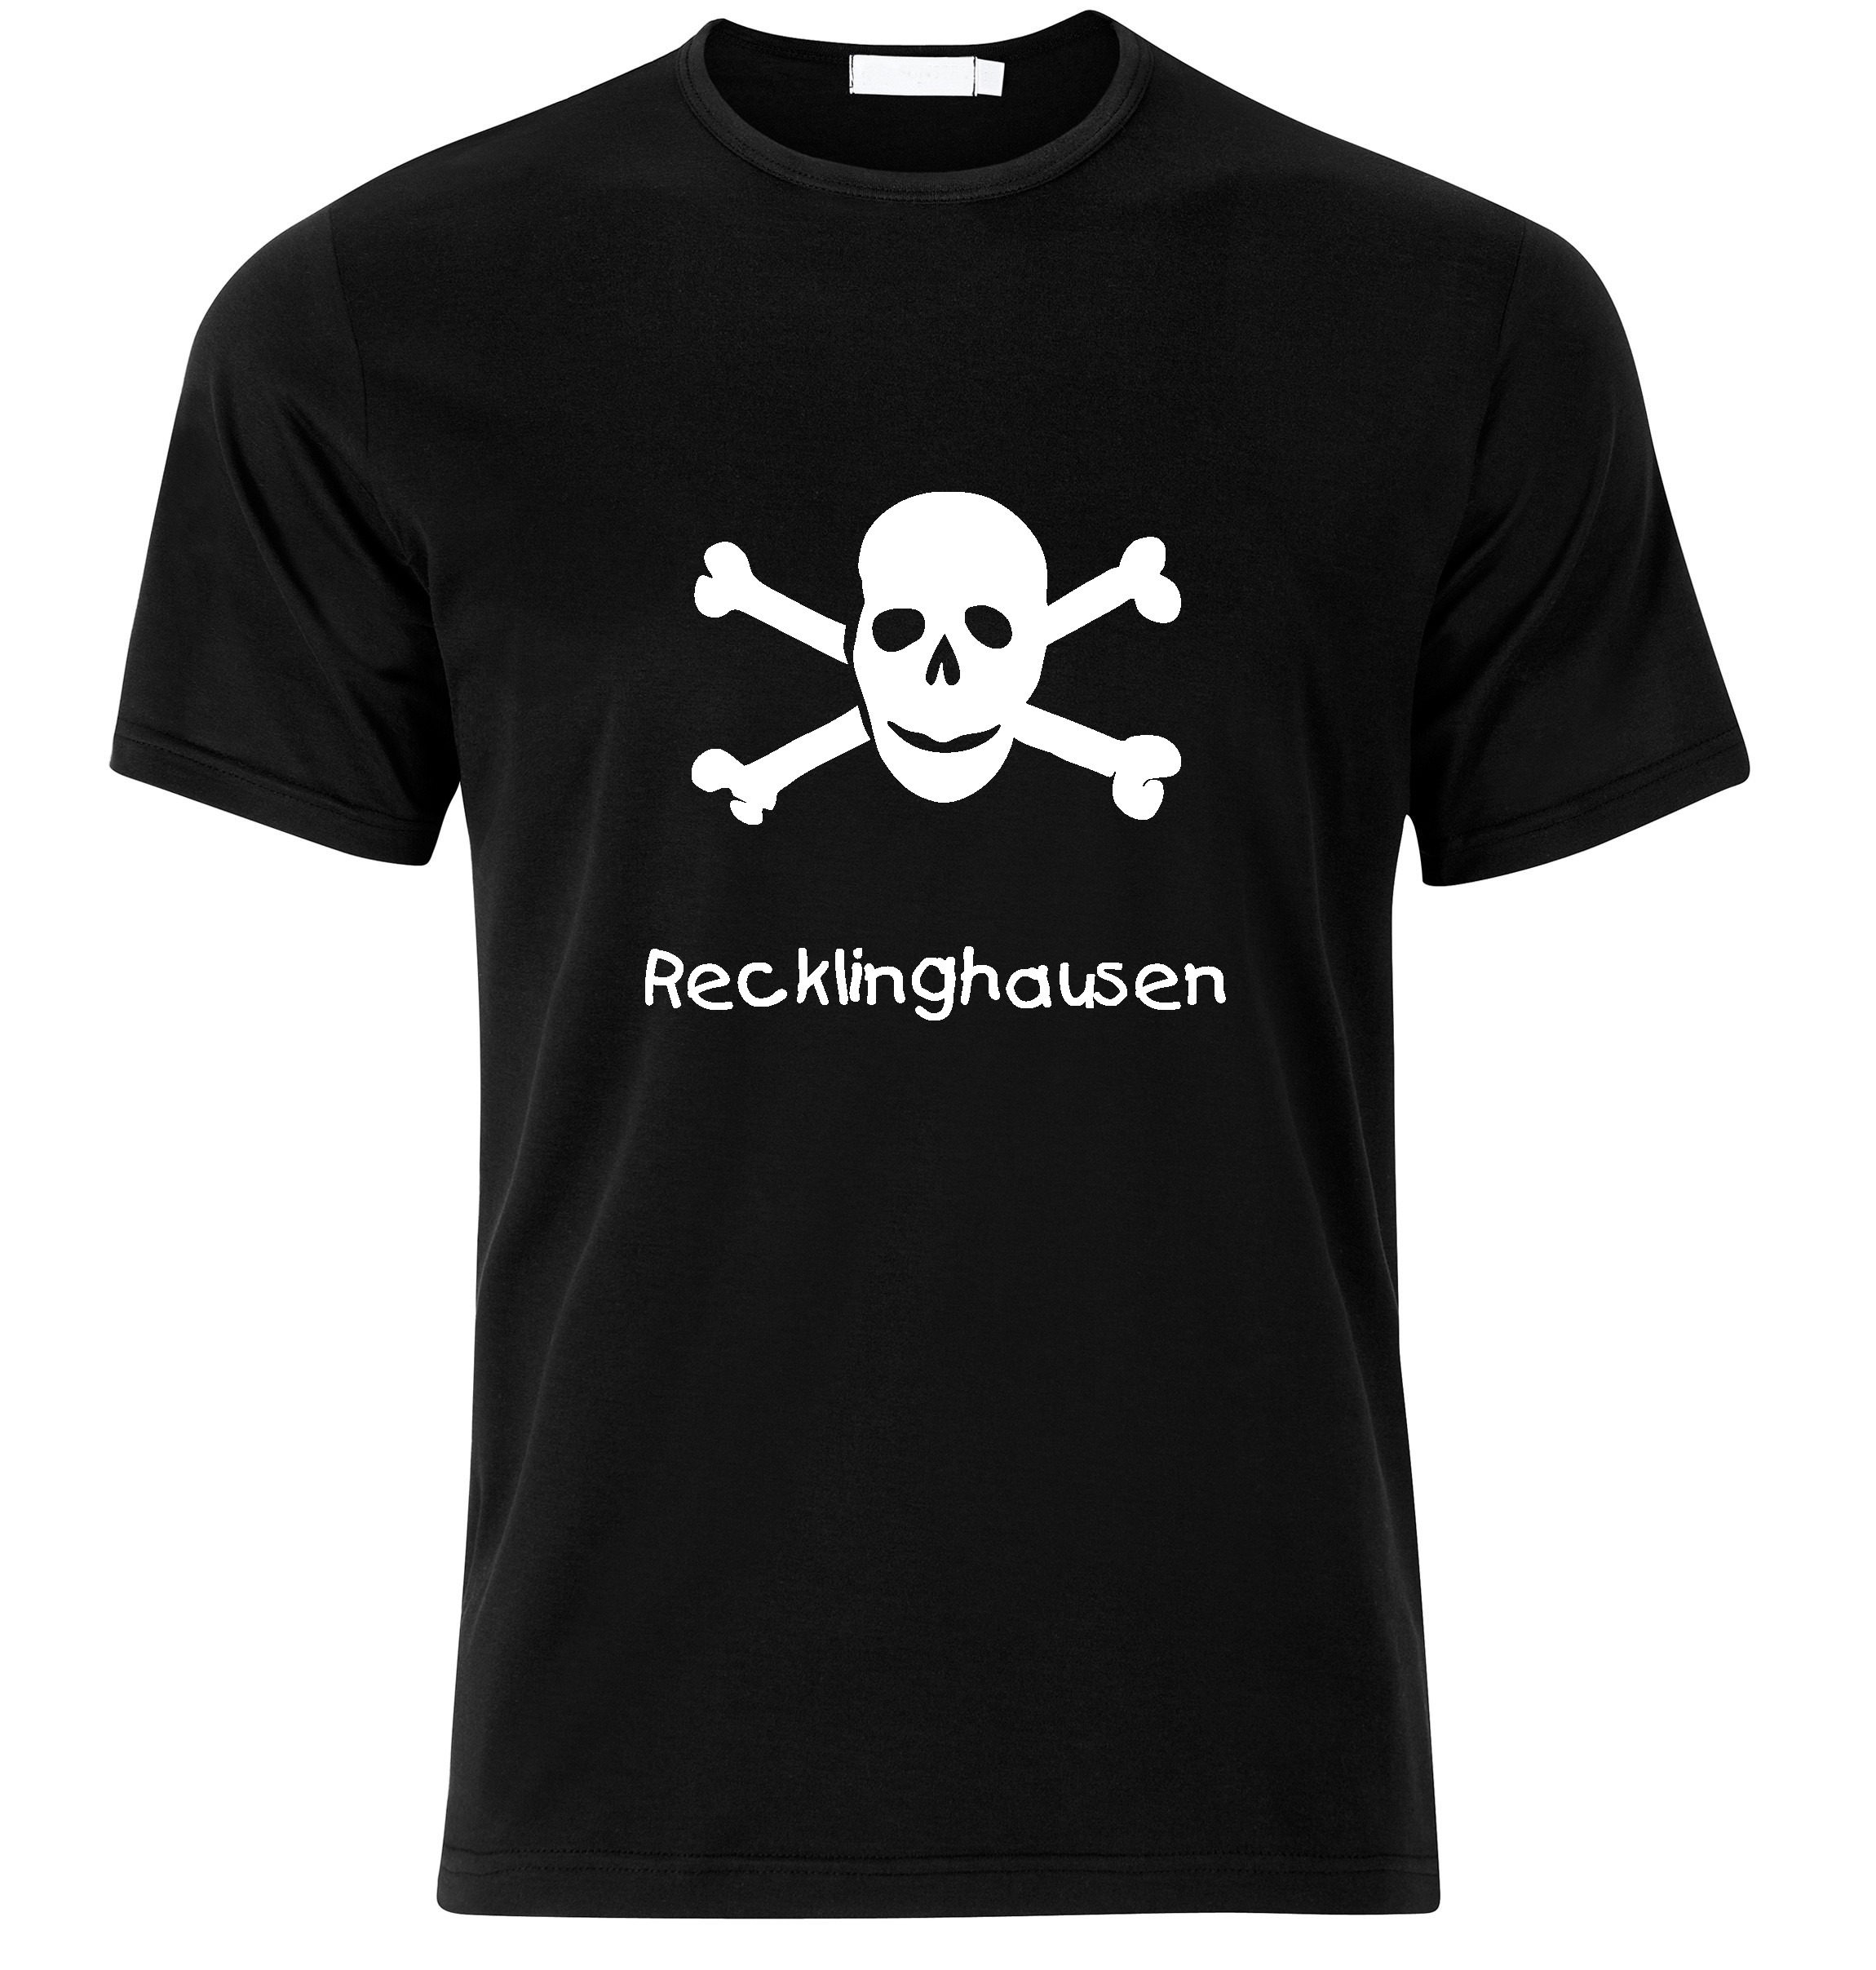 T-Shirt Recklinghausen Jolly Roger, Totenkopf